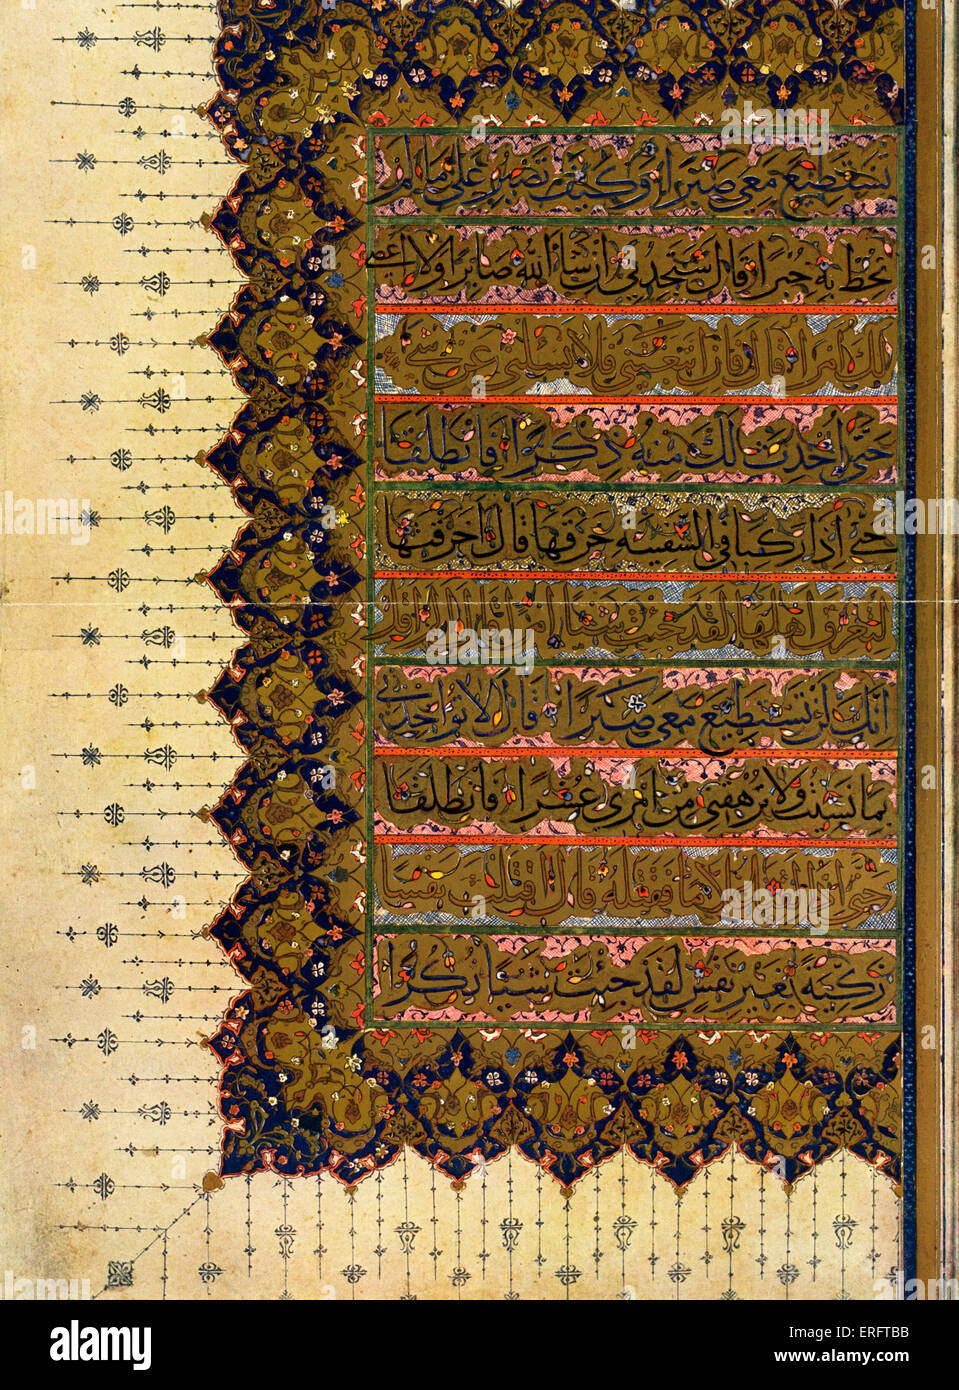 Der Koran (Koran) - Sura 18 (Verse 66-73), von der Handschrift des 16. Jahrhunderts. Stockfoto